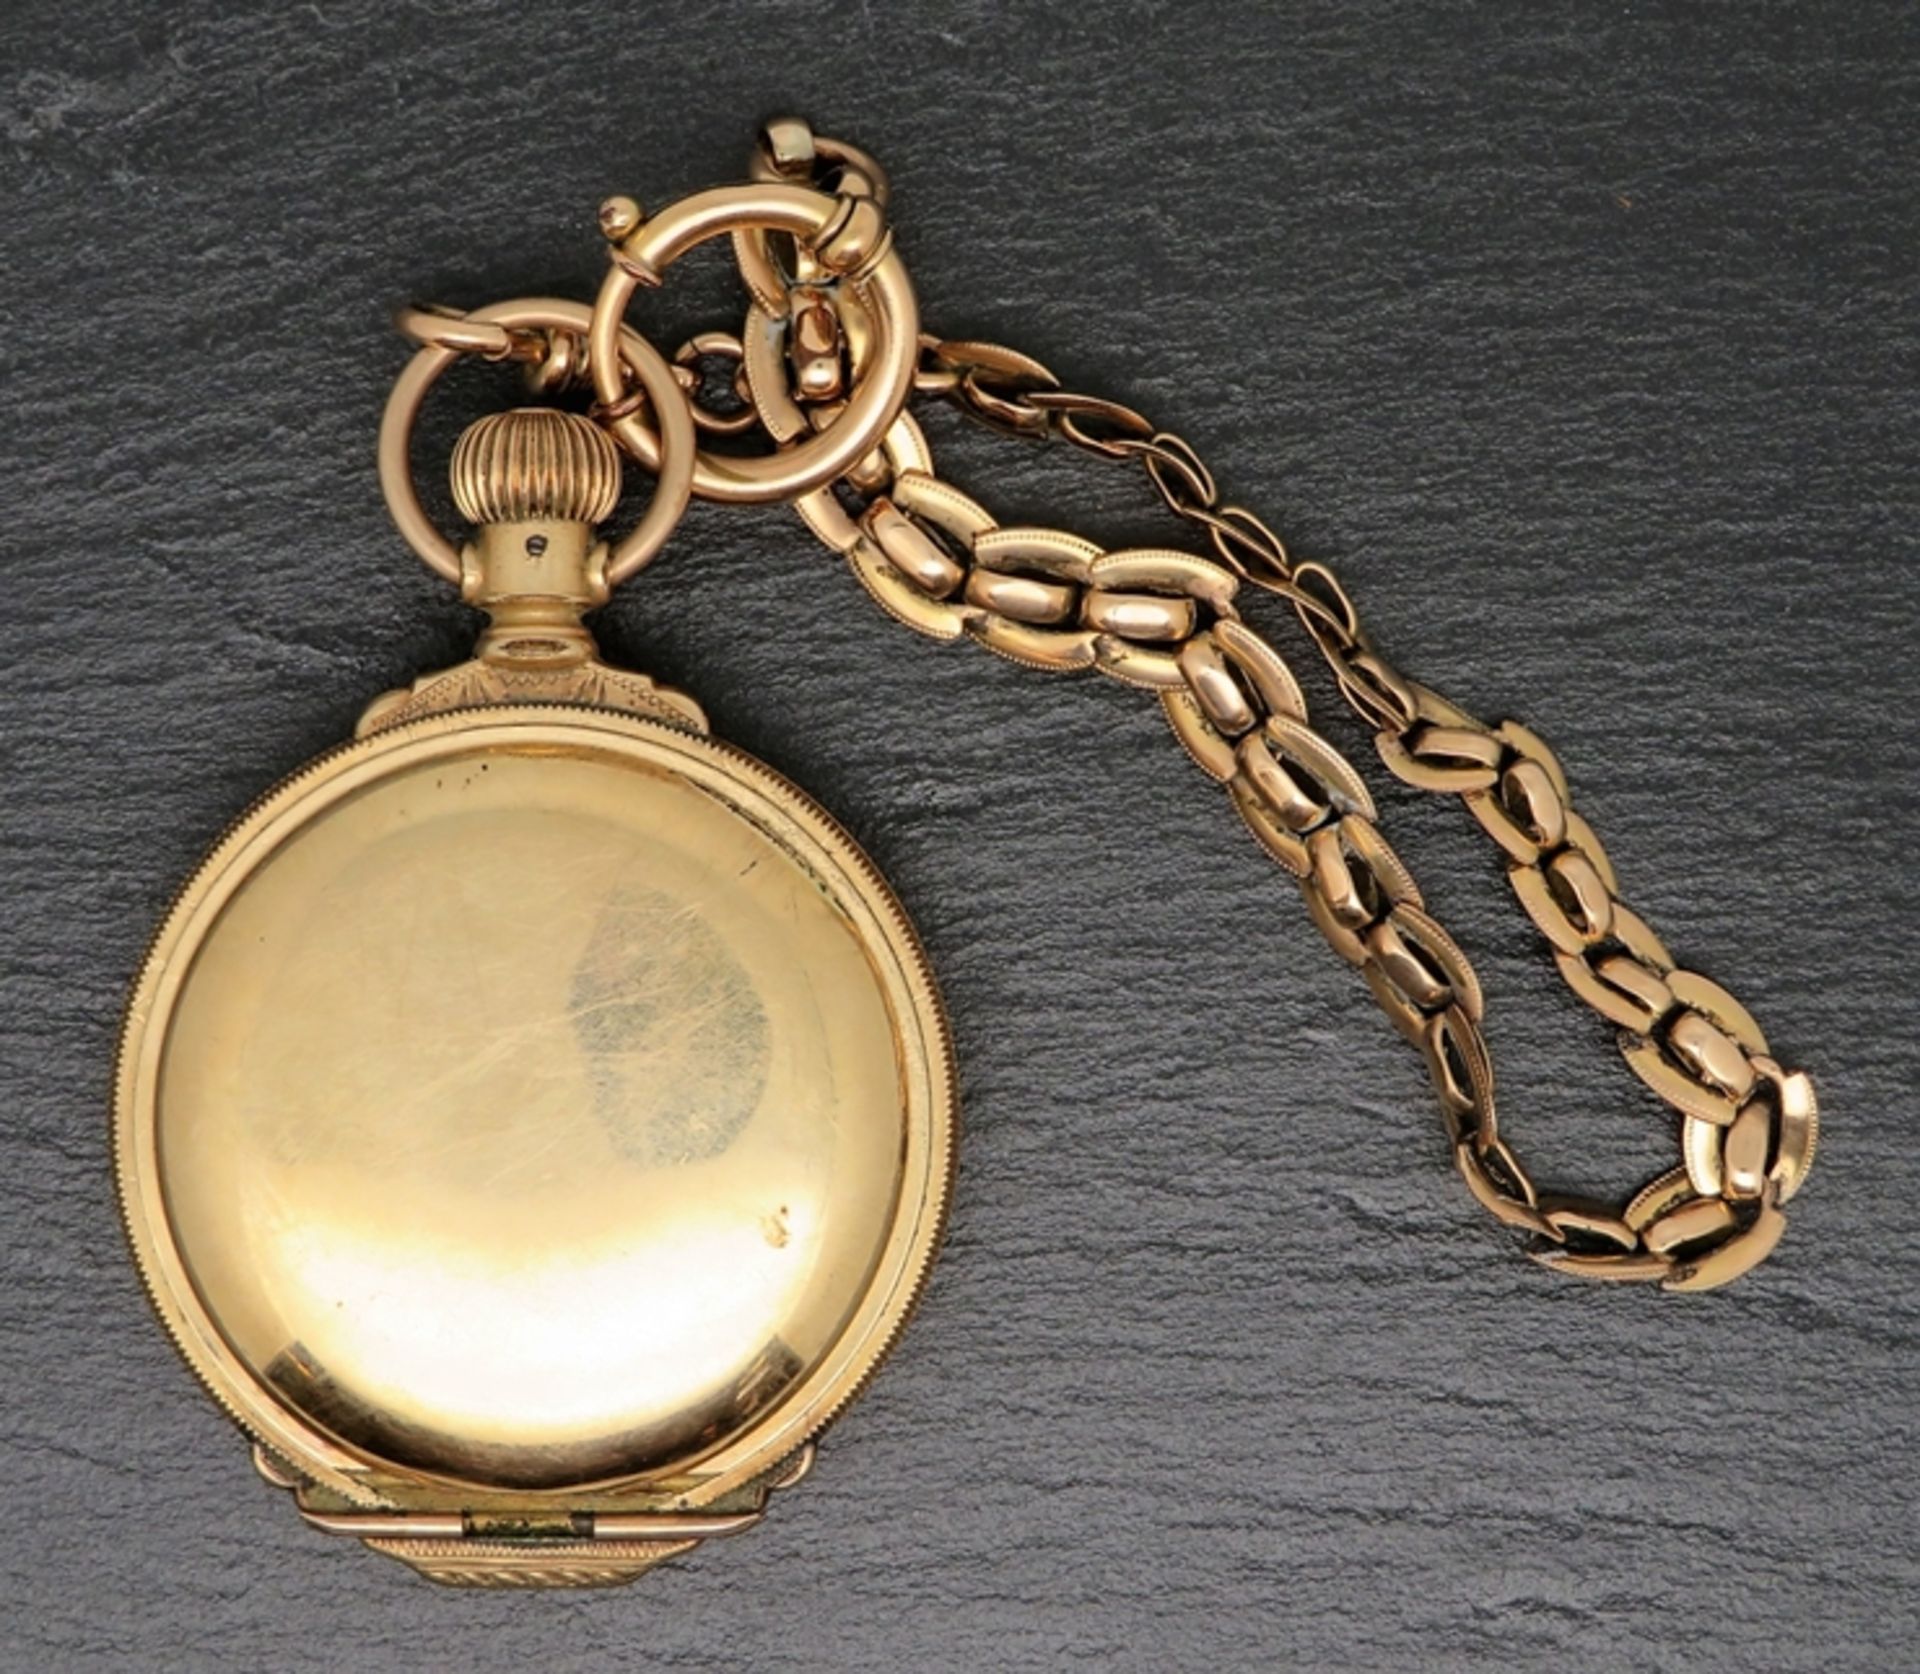 Taschenuhr mit Uhrenkette, Rockford, Gehäuse und Uhrenkette vergoldet, Kronenaufzug, Werk läuft ni - Image 2 of 3